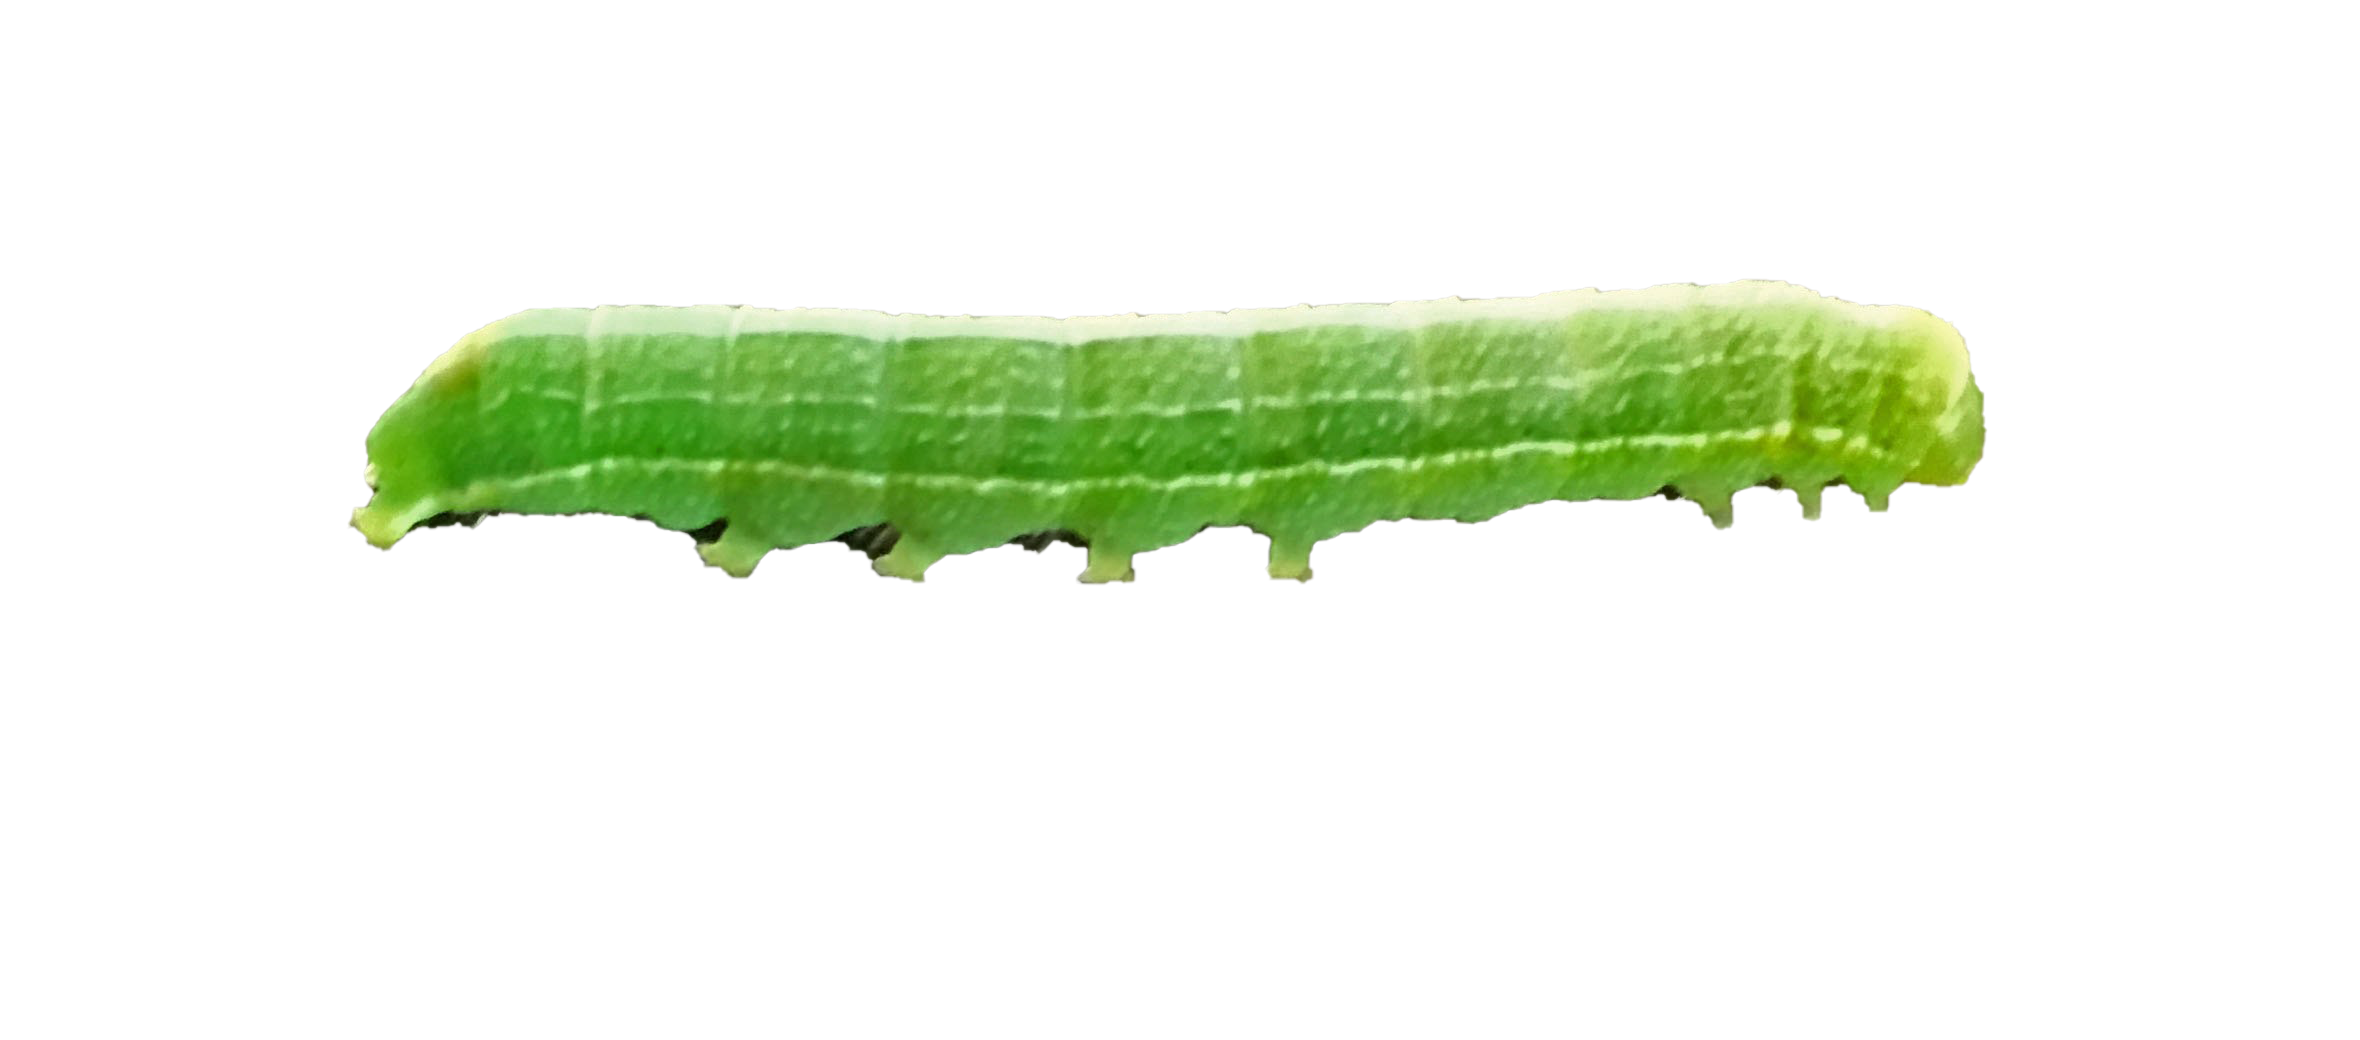 Caterpillar PNG Photo Image